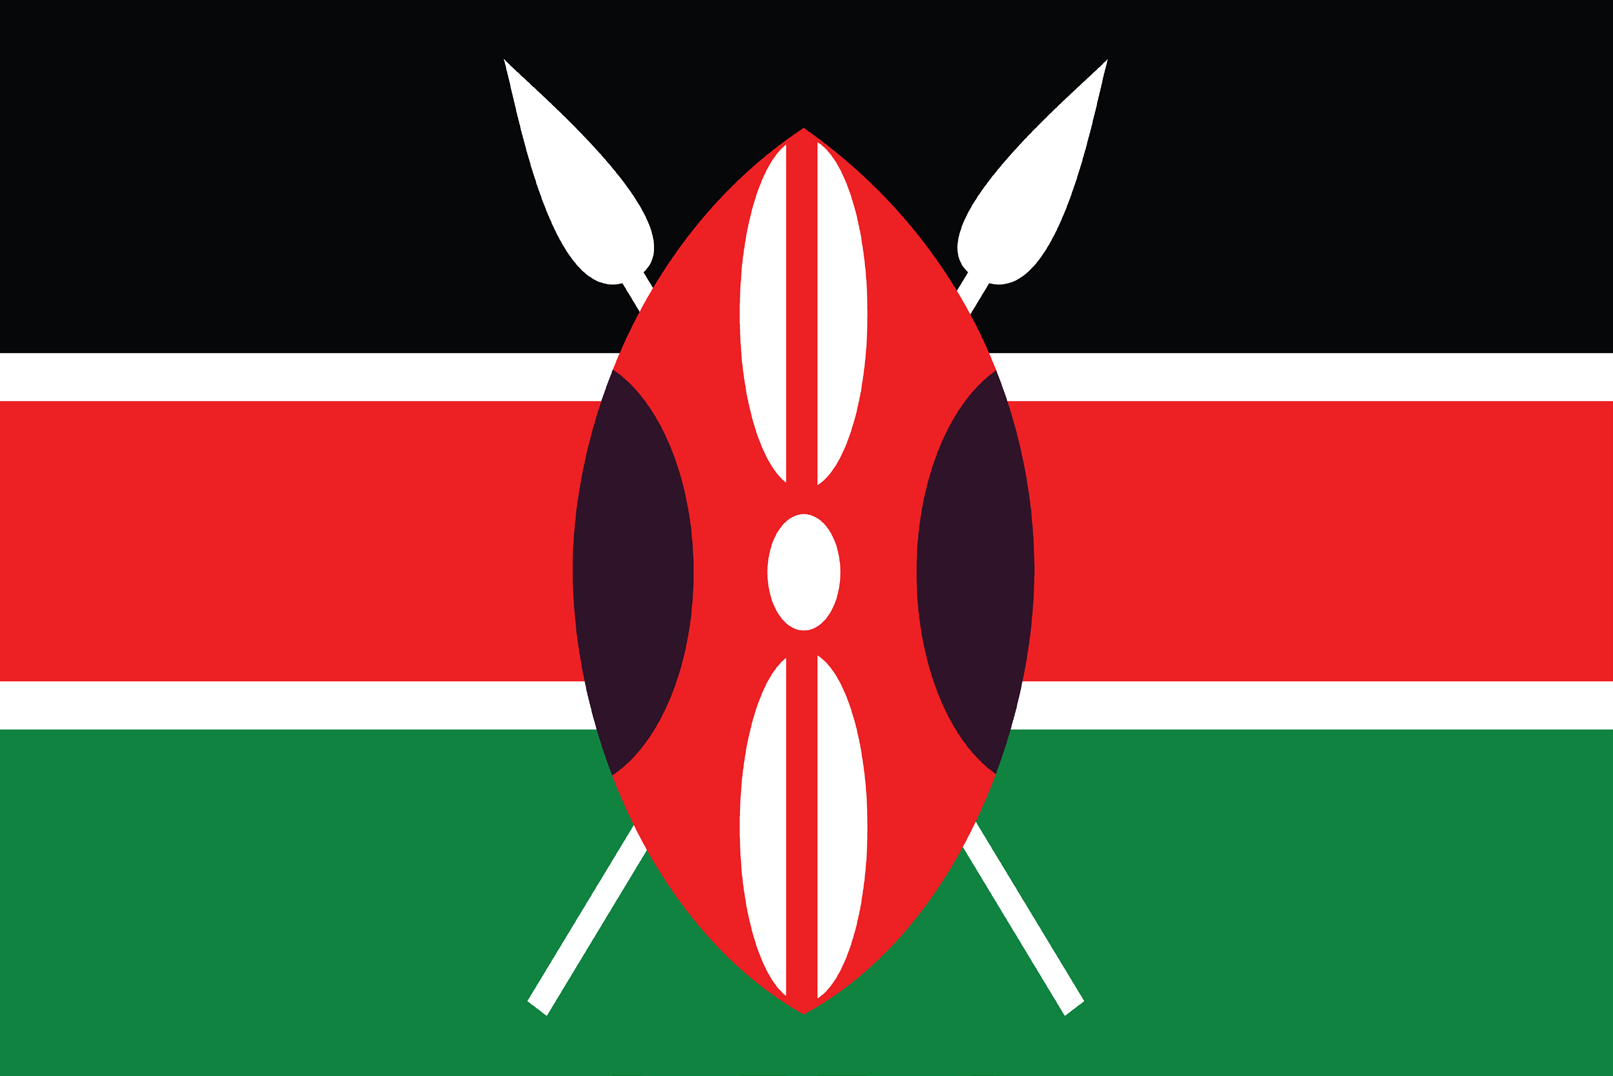 Het land Kenia Officiele taal: Engels, Swahili Hoofdstad: Regeringsvorm: Staatshoofd: Nairobi Republiek President Uhuru Kenyatta Religie: Protestant 45%, Katholiek 33%, Moslim 10%, overig 12%